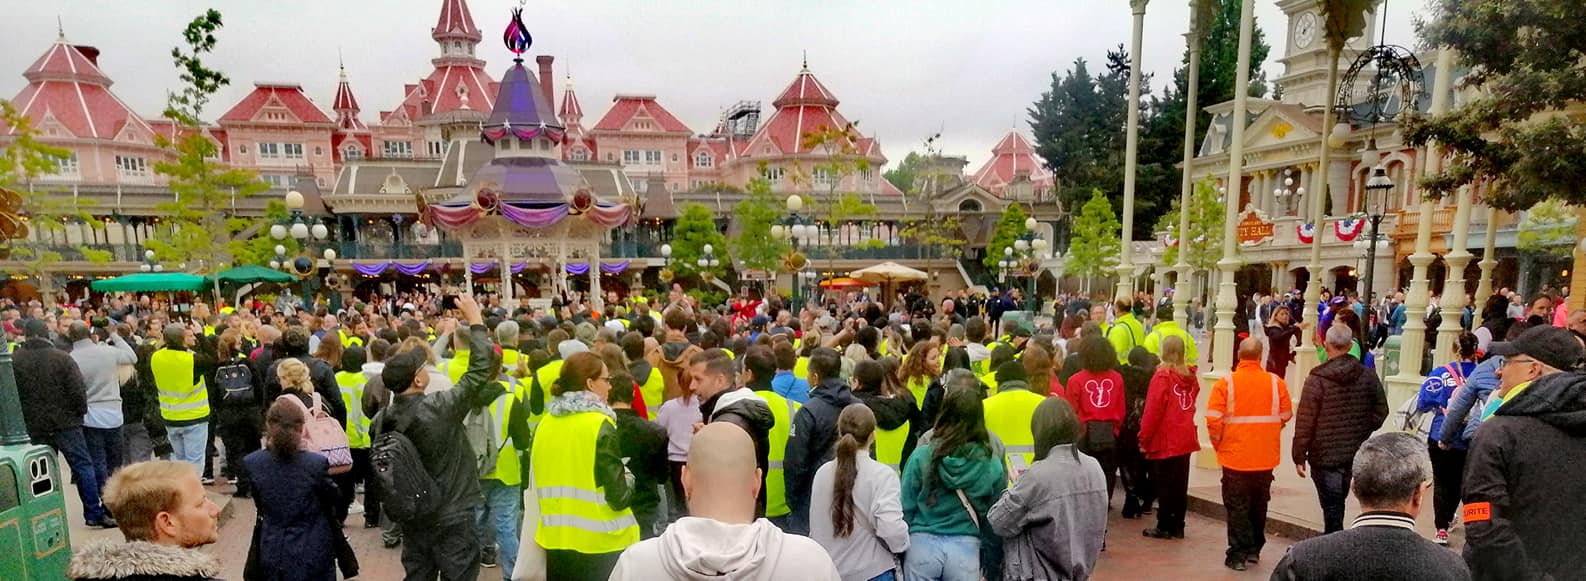 Grève pour les salaires à Disney : face à la mobilisation massive, la direction menace les grévistes